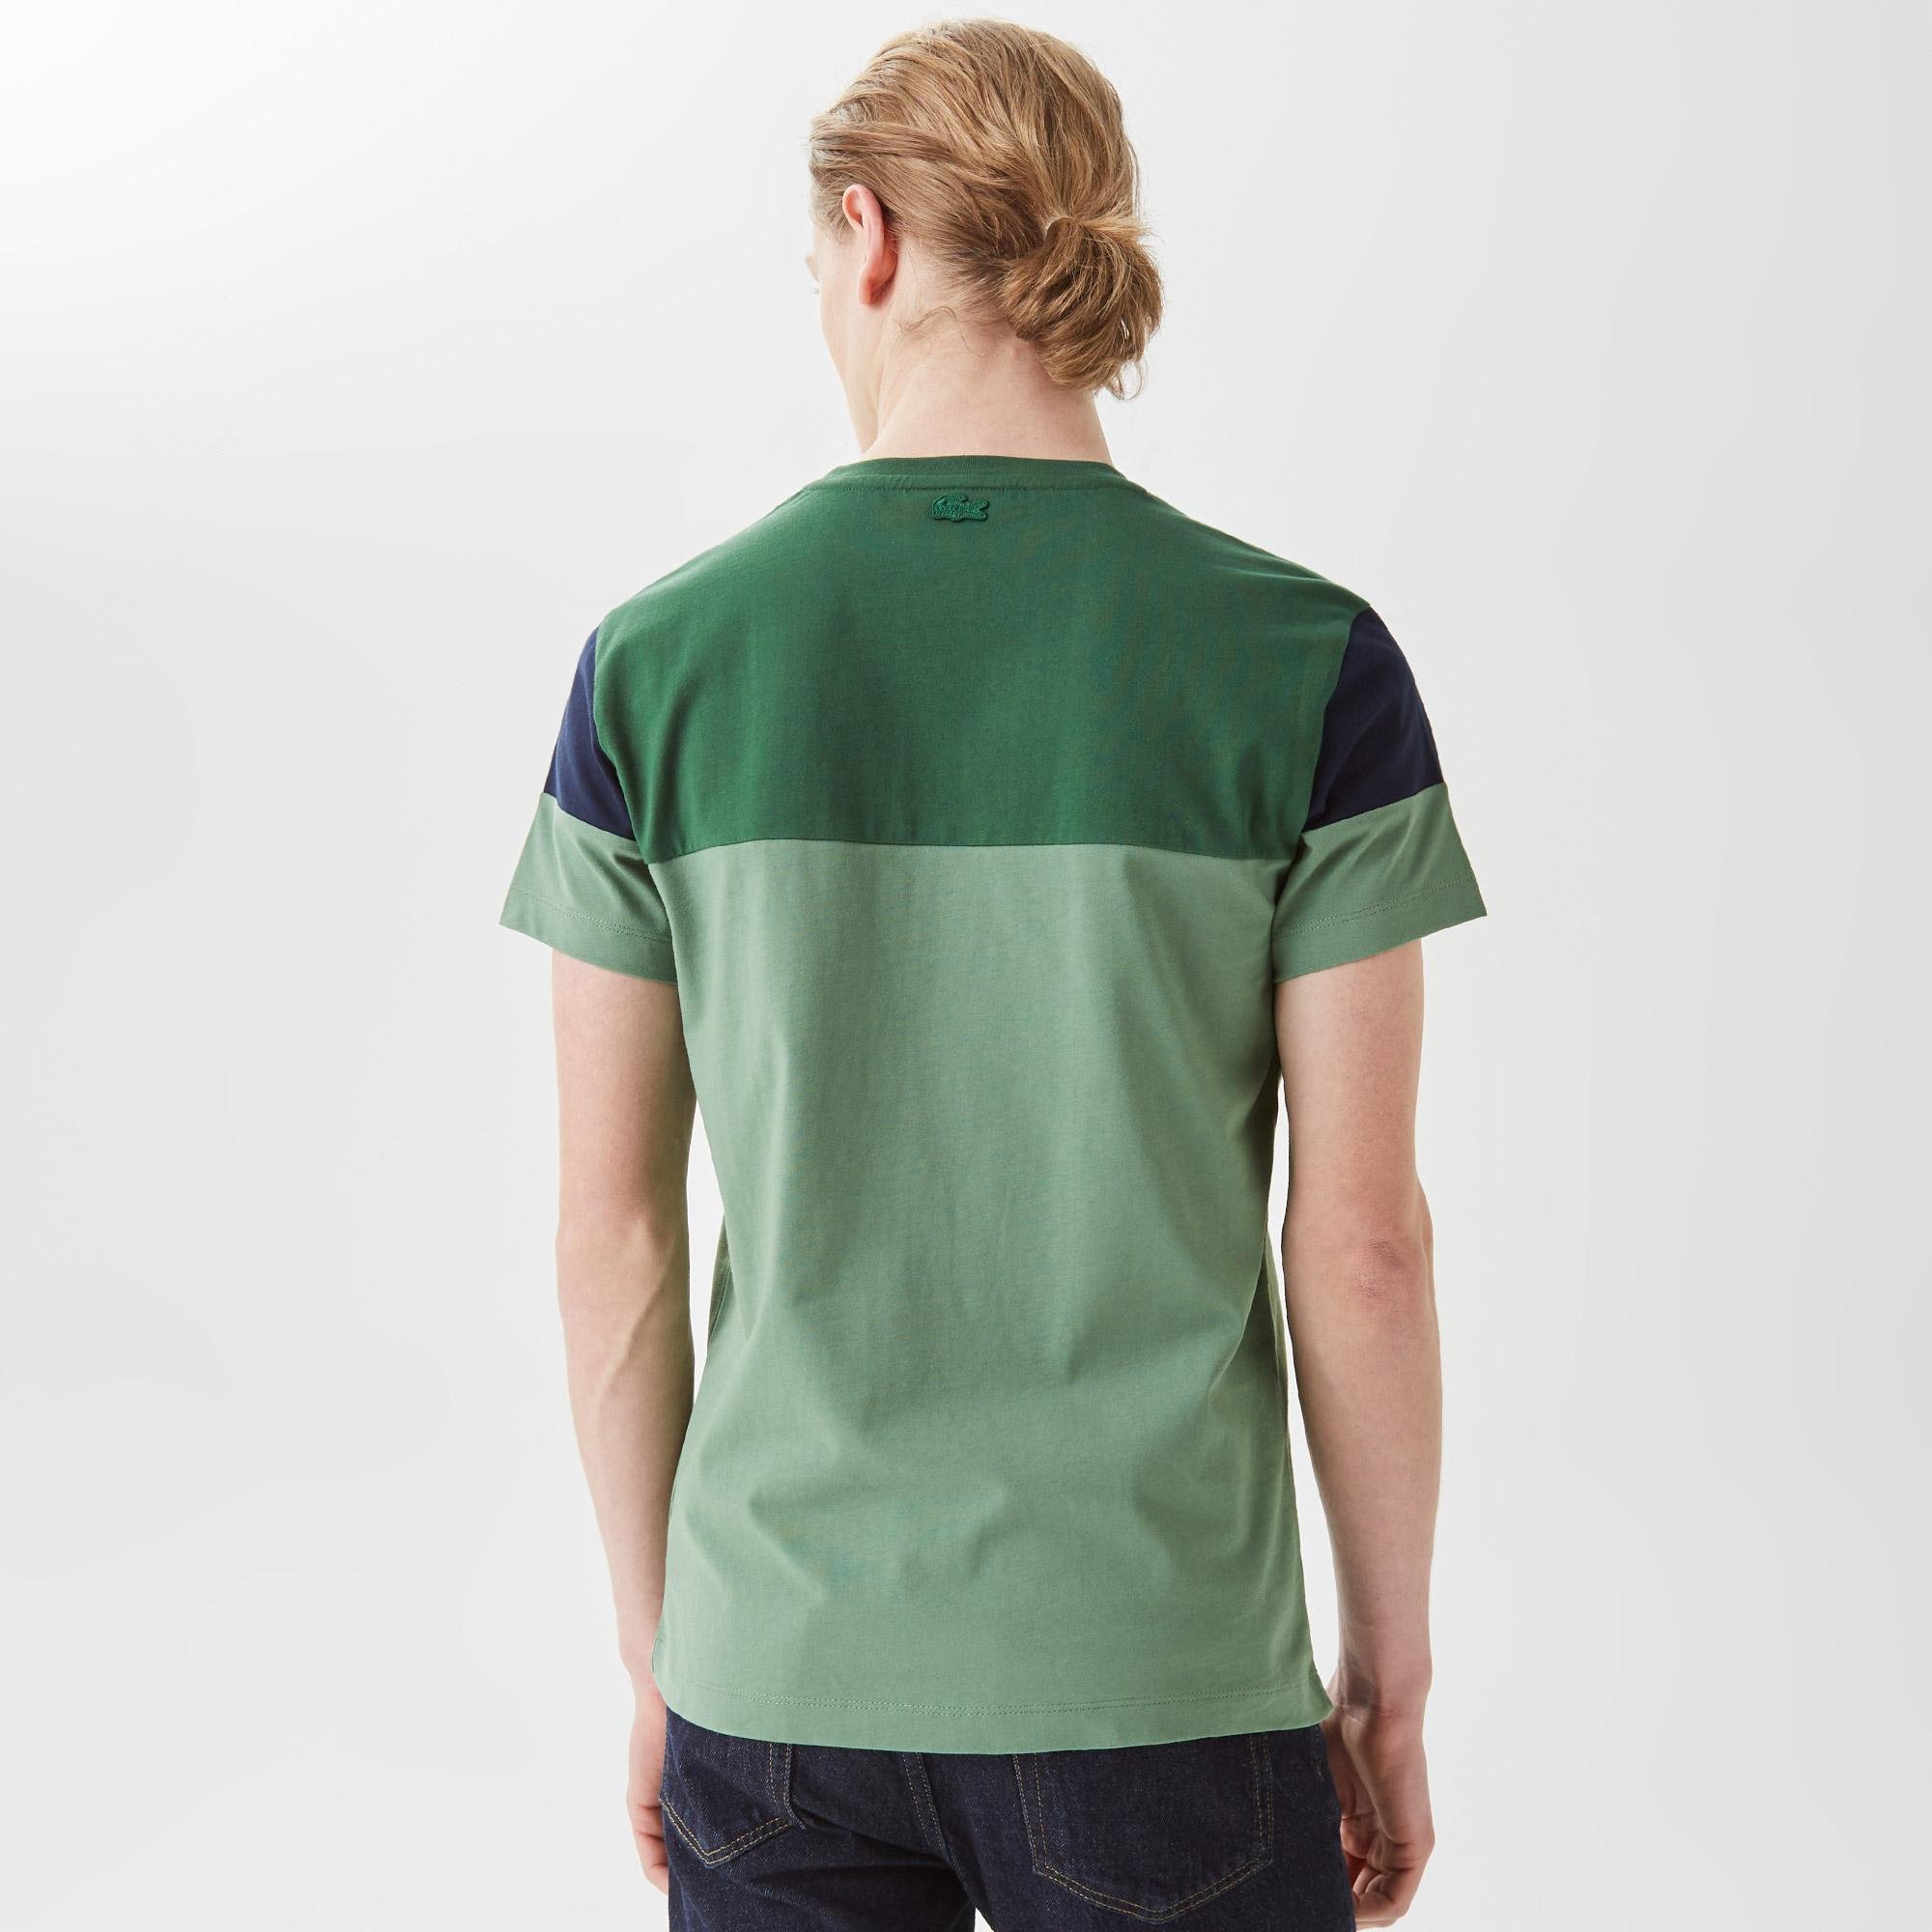 Lacoste Erkek Slim Fit Bisiklet Yaka Renk Bloklu Yeşil T-Shirt